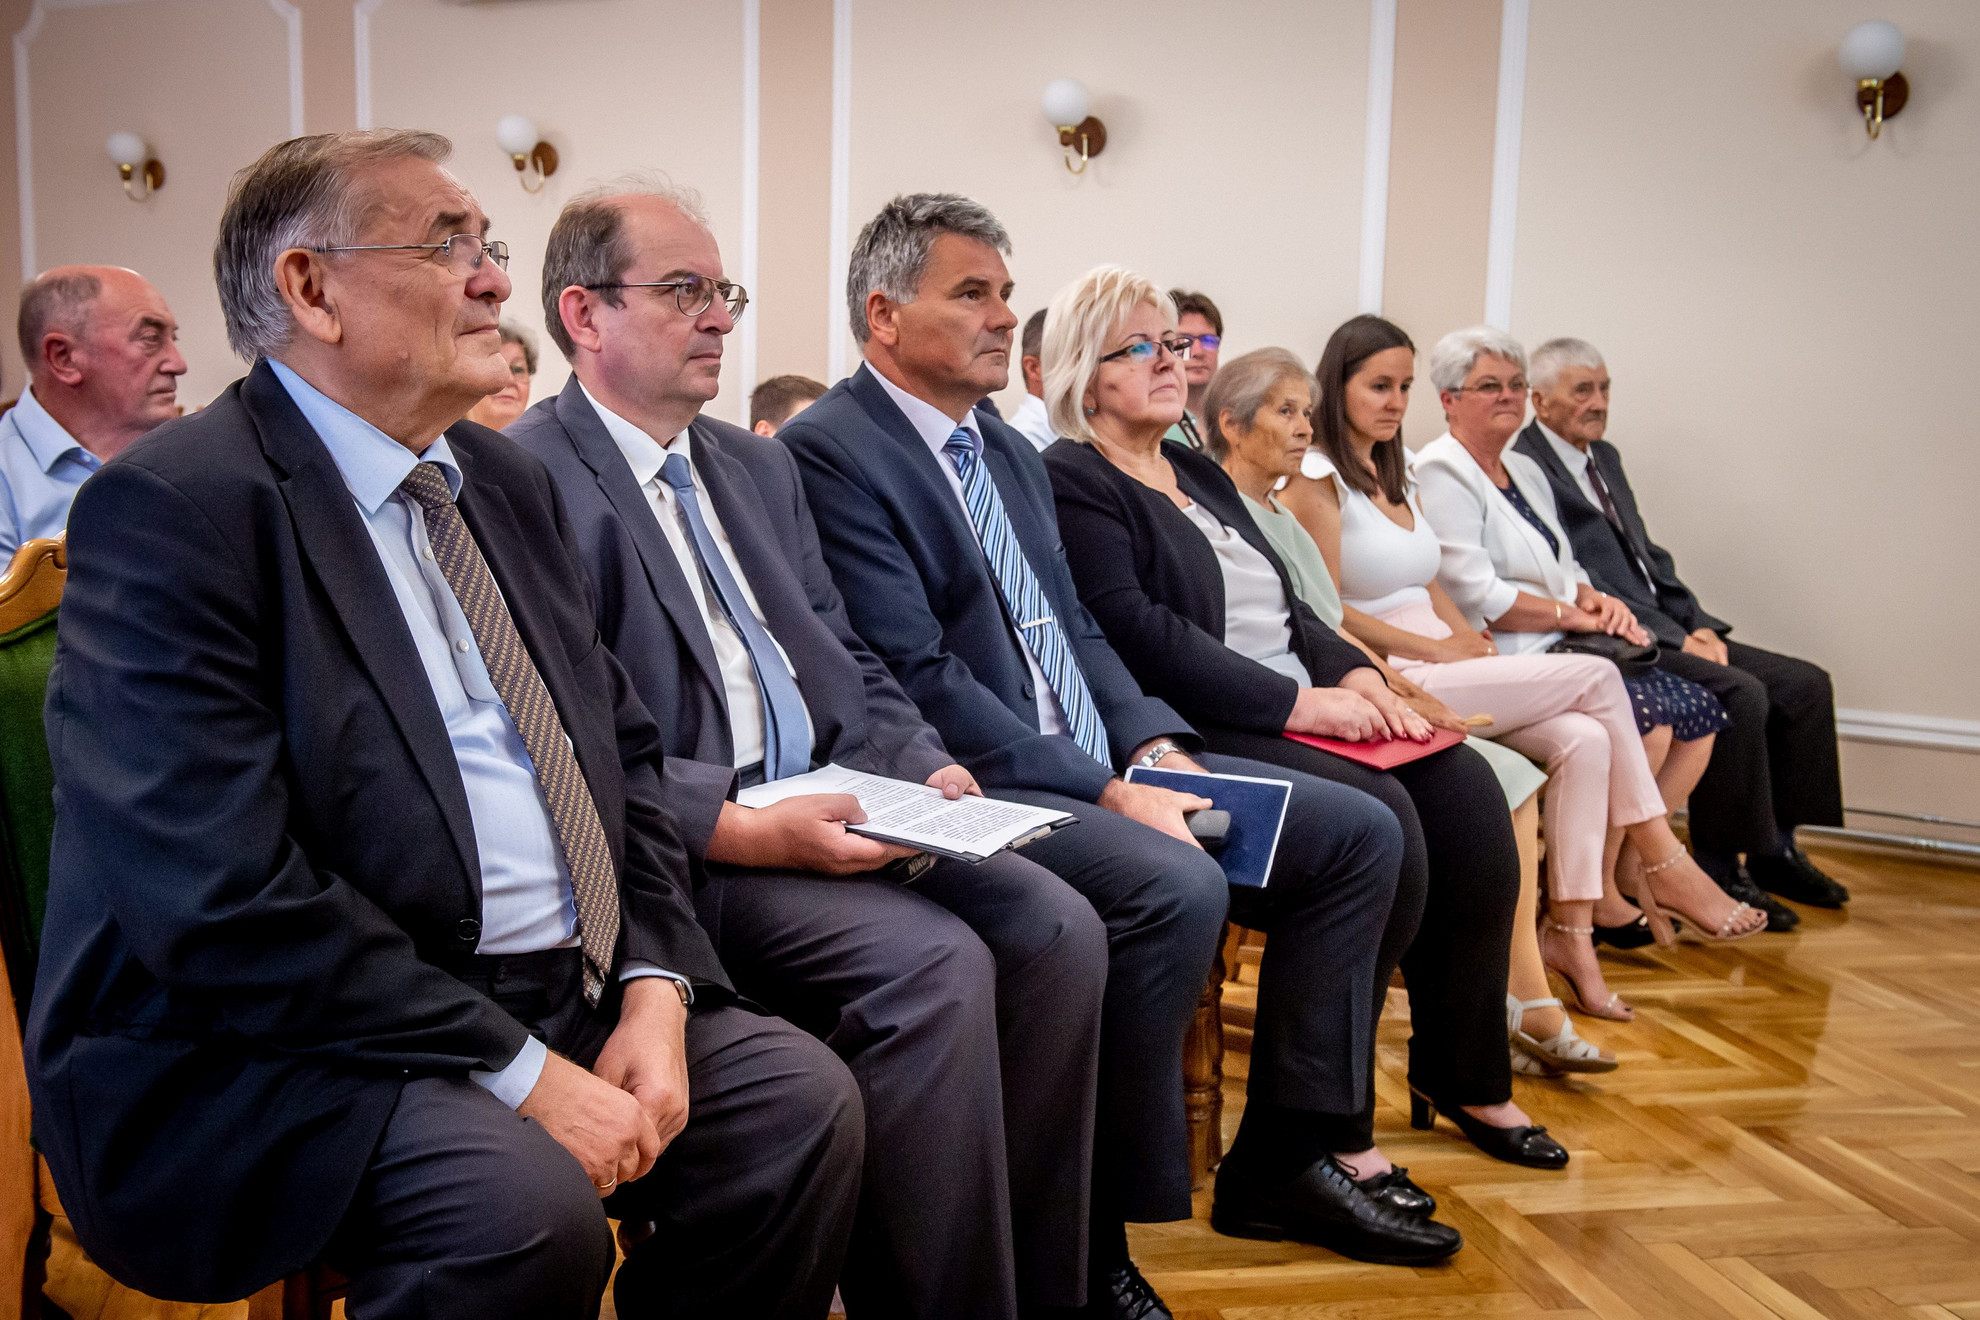 Lezsák Sándor (b) a Lakiteleki Polgármesteri Hivatalban, a Pedagógusok a kistelepülésekért-díj 2022. évi kitüntetéseinek átadásán 2022. június 17-én